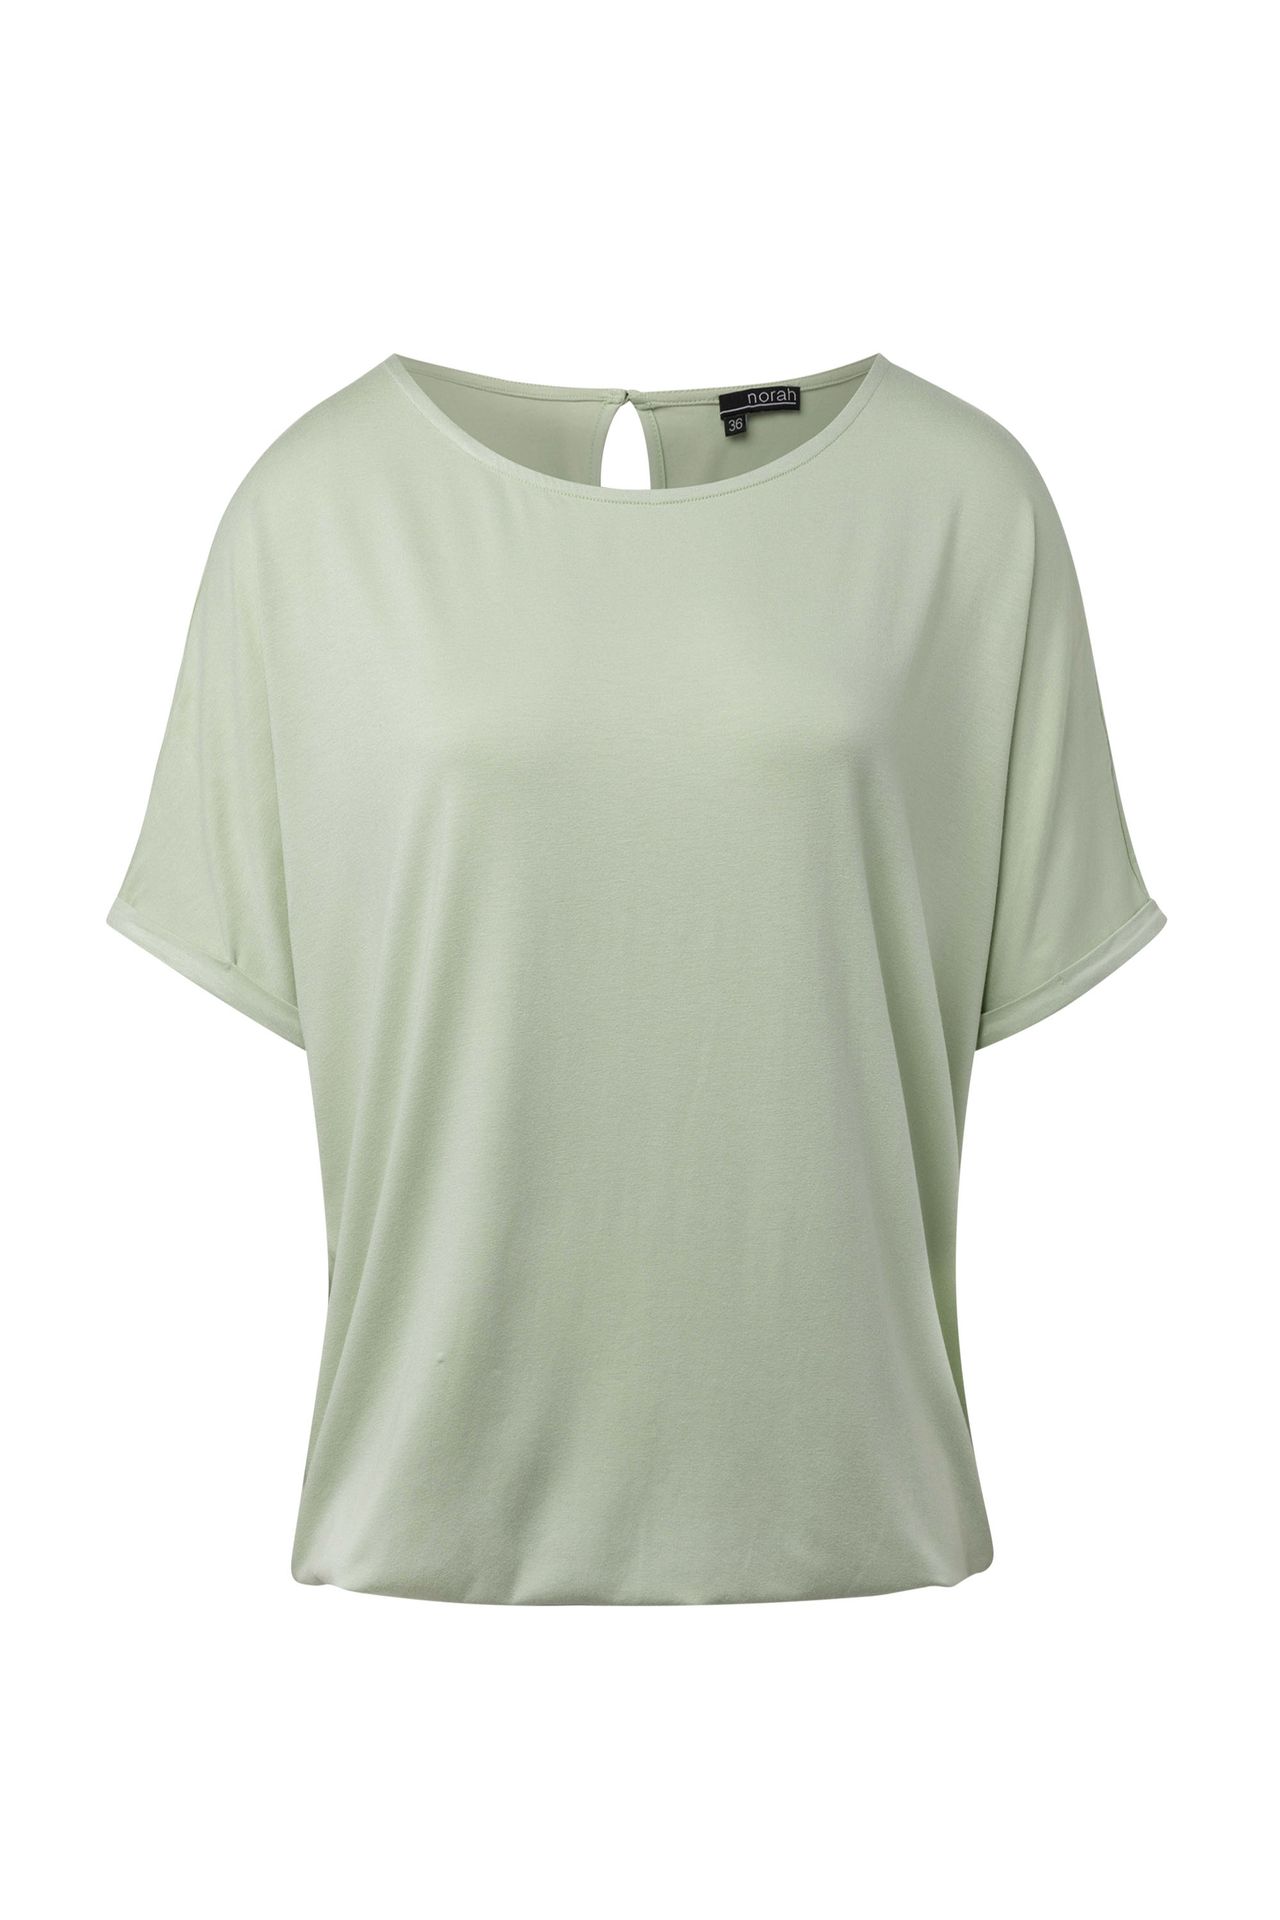 Norah Shirt mintgroen light green 215230-515